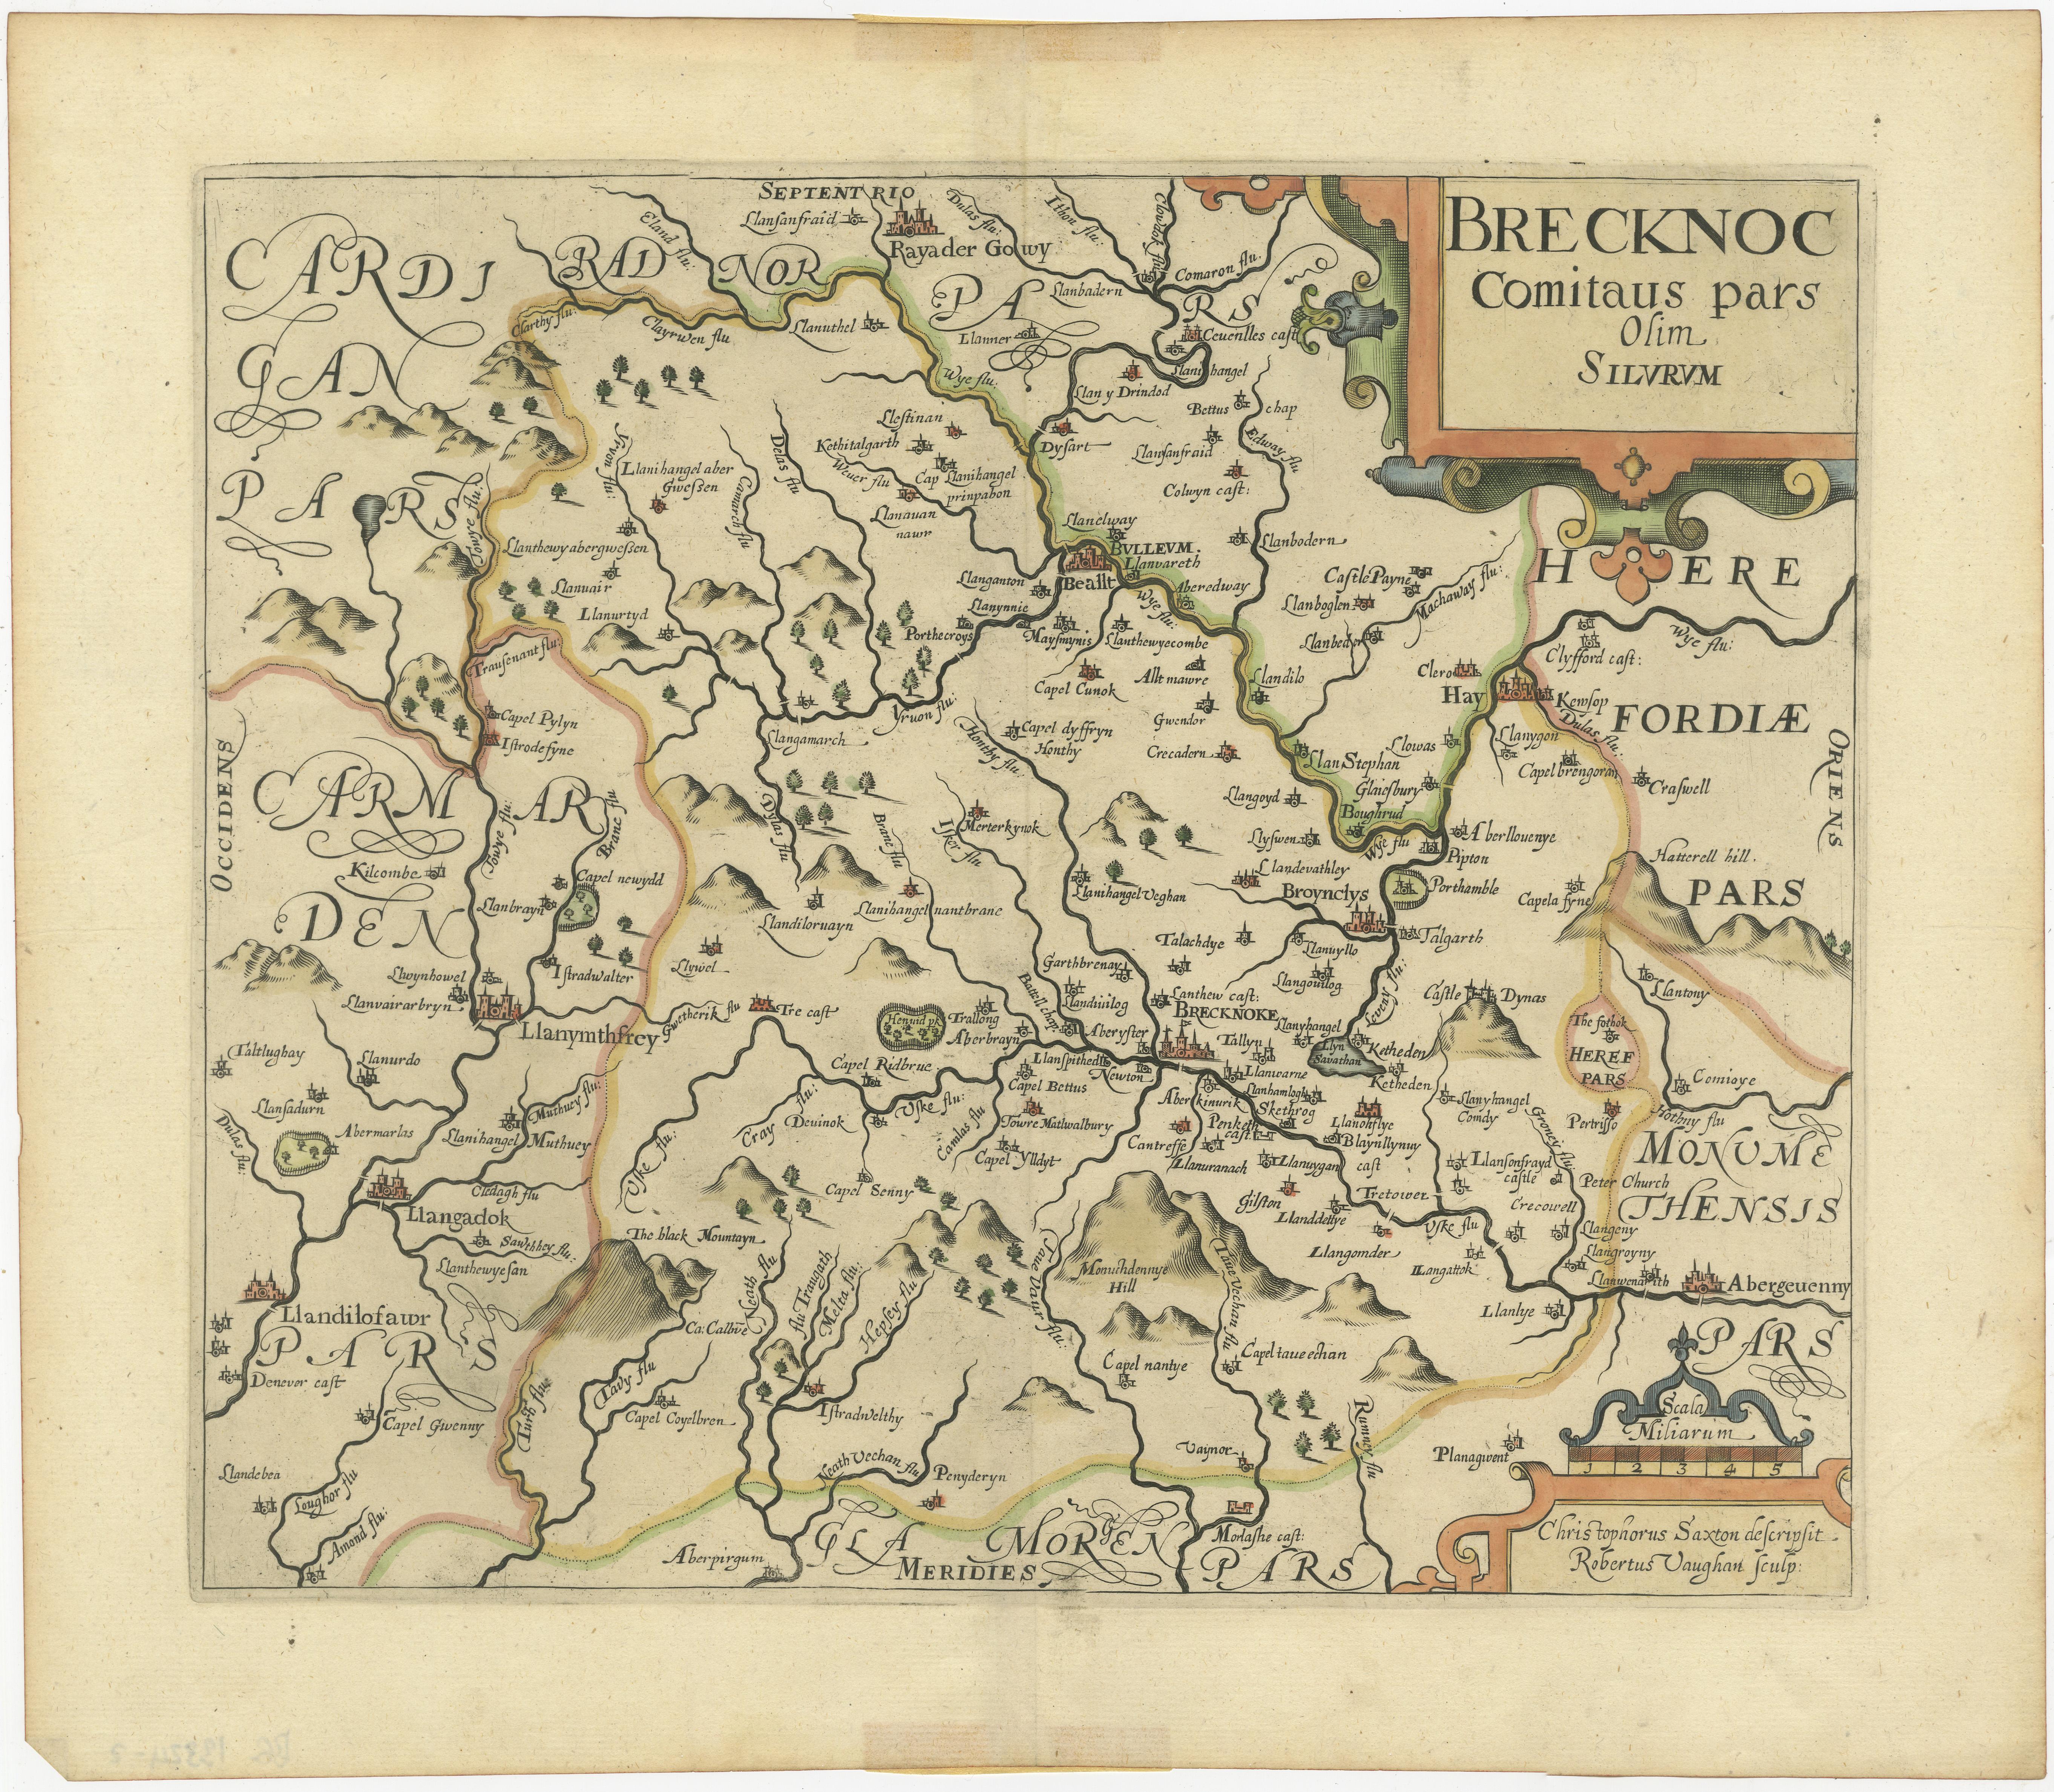 Antike Karte mit dem Titel 'Brecknoc comitaus pars olim silurum'. Originale alte Karte von Brecknockshire, Wales. Gestochen von R. Vaughan nach Christophe Saxton. Veröffentlicht um 1640. 